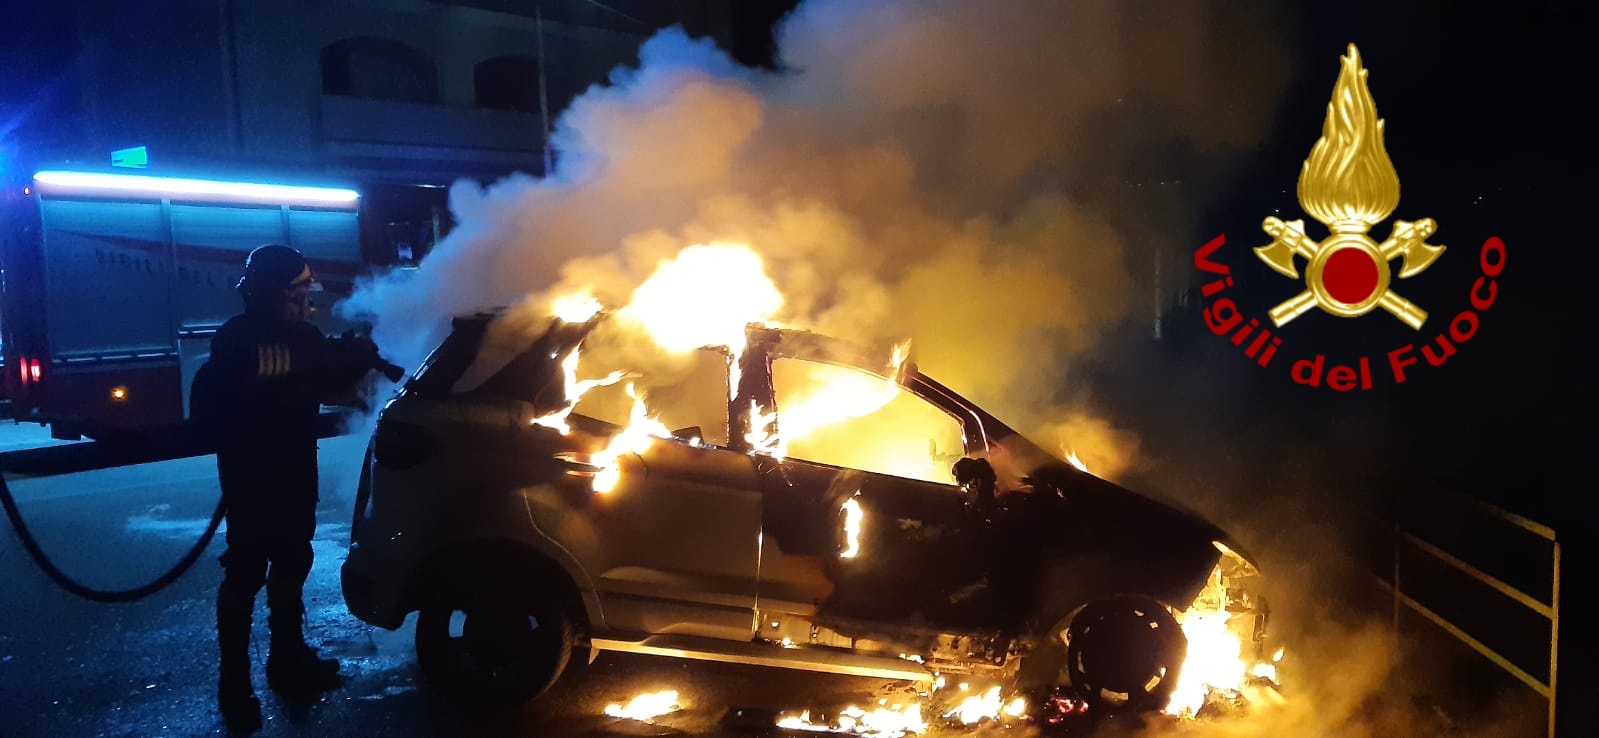 Summonte| Auto in fiamme nella notte, danneggiate anche altre due vetture